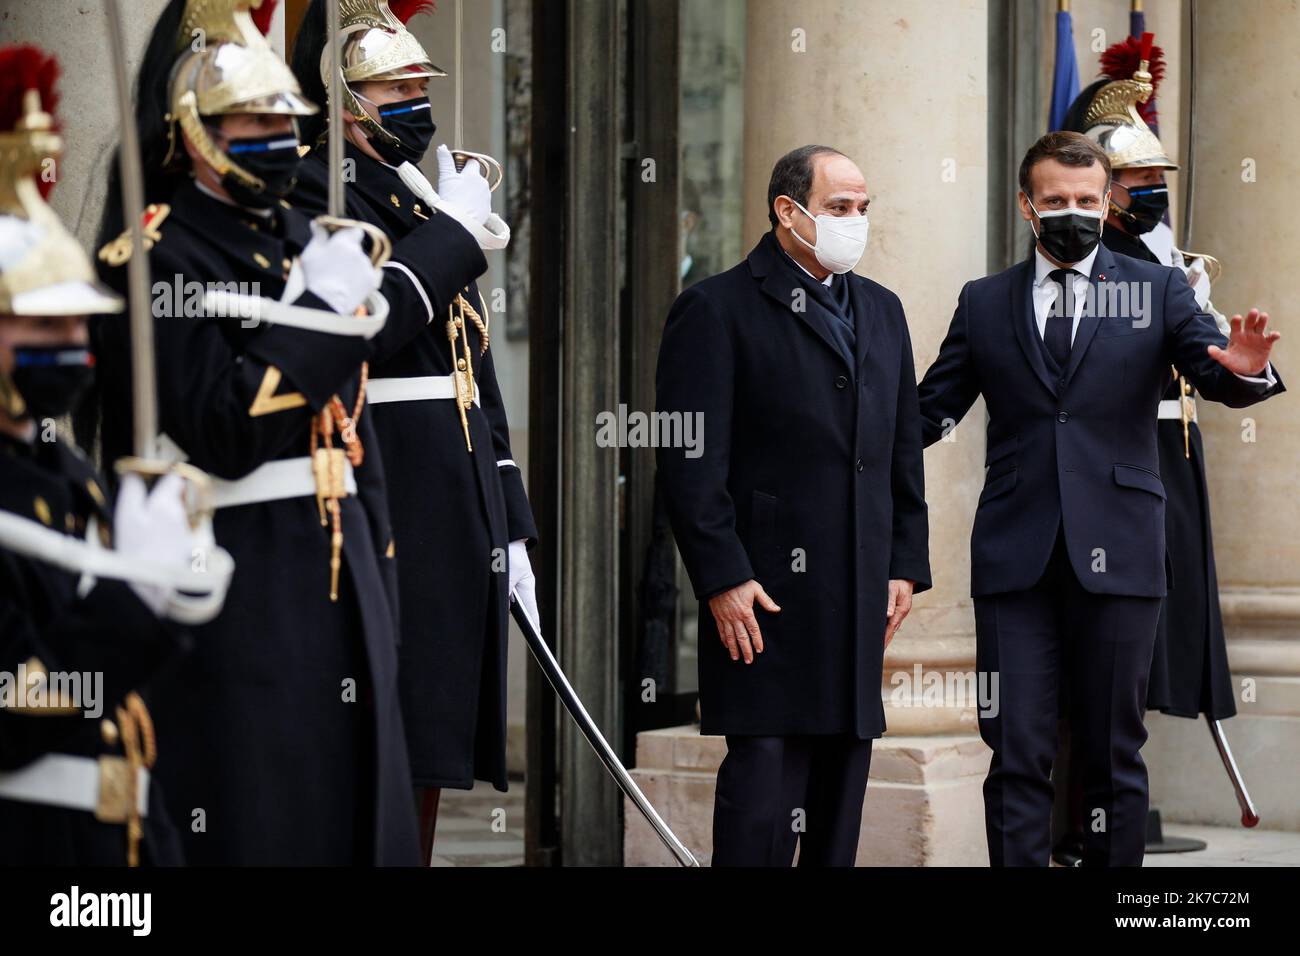 ©Thomas Padilla/MAXPPP - 07/12/2020 ; Paris, FRANCE ; LE PRESIDENT DE LA REPUBLIQUE, EMMANUEL MACRON RECOIT LE PRESIDENT DE LA REPUBLIQUE ARABE D' EGYPTE, ABDEL FATTAH AL SISSI AU PALAIS DE L' ELYSEE. French President Emmanuel Macron receives President of Egypt, Abdel Fattah Al-Sisi at the Elysee Palace in Paris, on December 07, 2020. Stock Photo